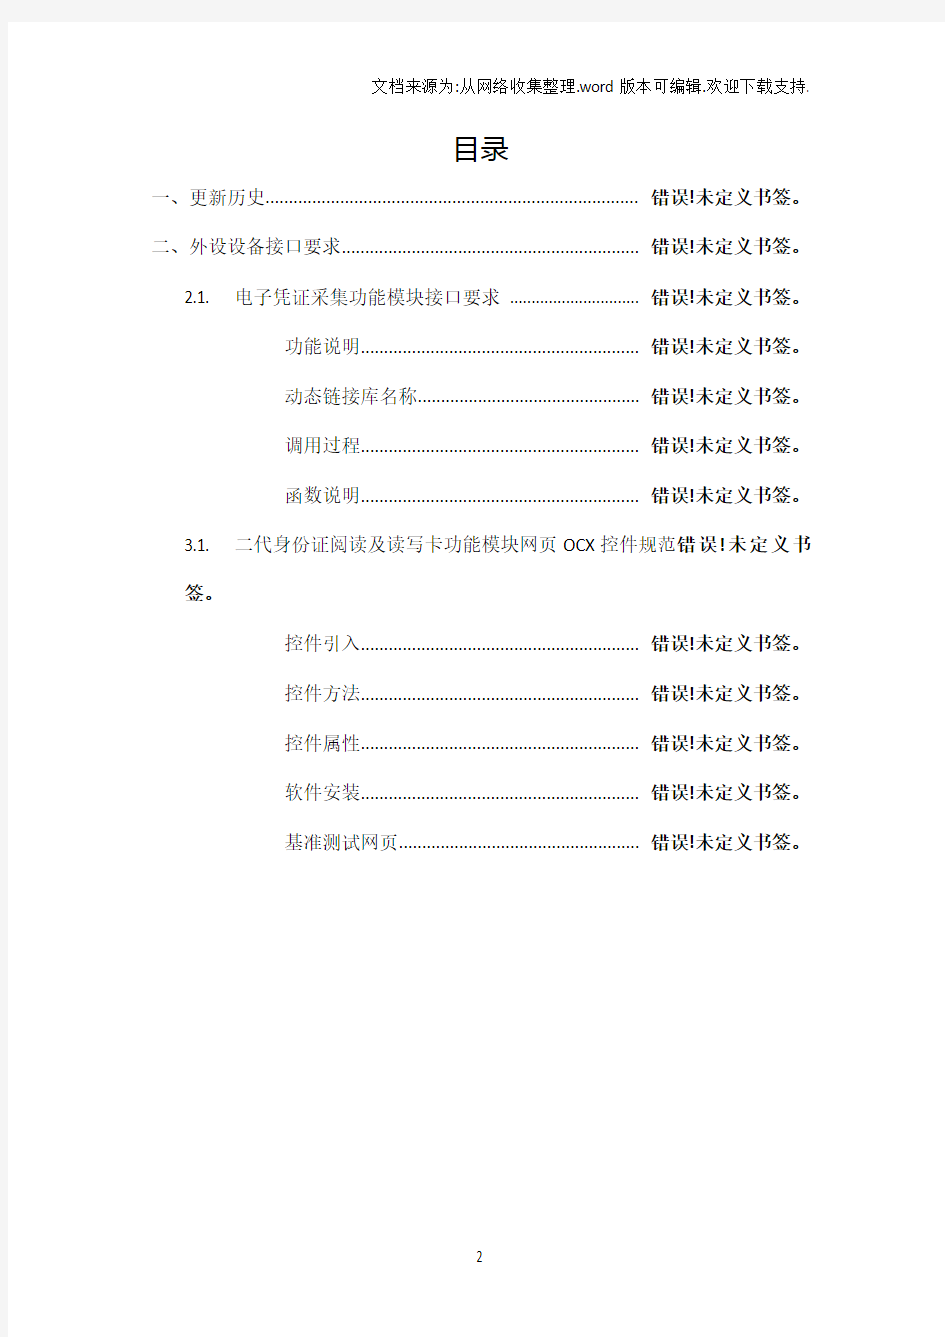 2016年中国联通数字化营业厅一体化高拍仪接口规范v1.0